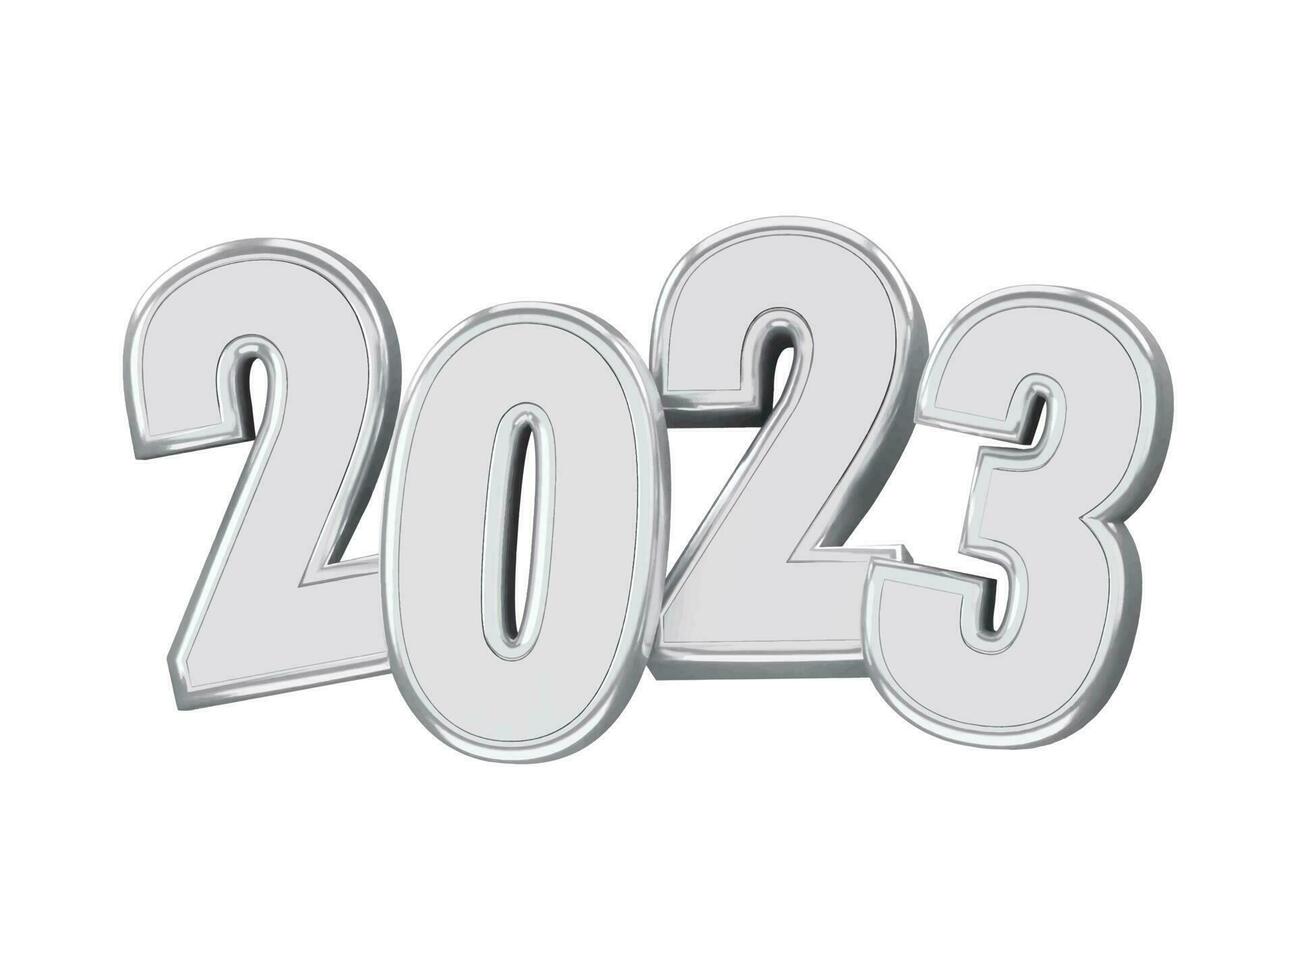 renderização 3d realista efeito de texto de ano novo de 2023 vetor